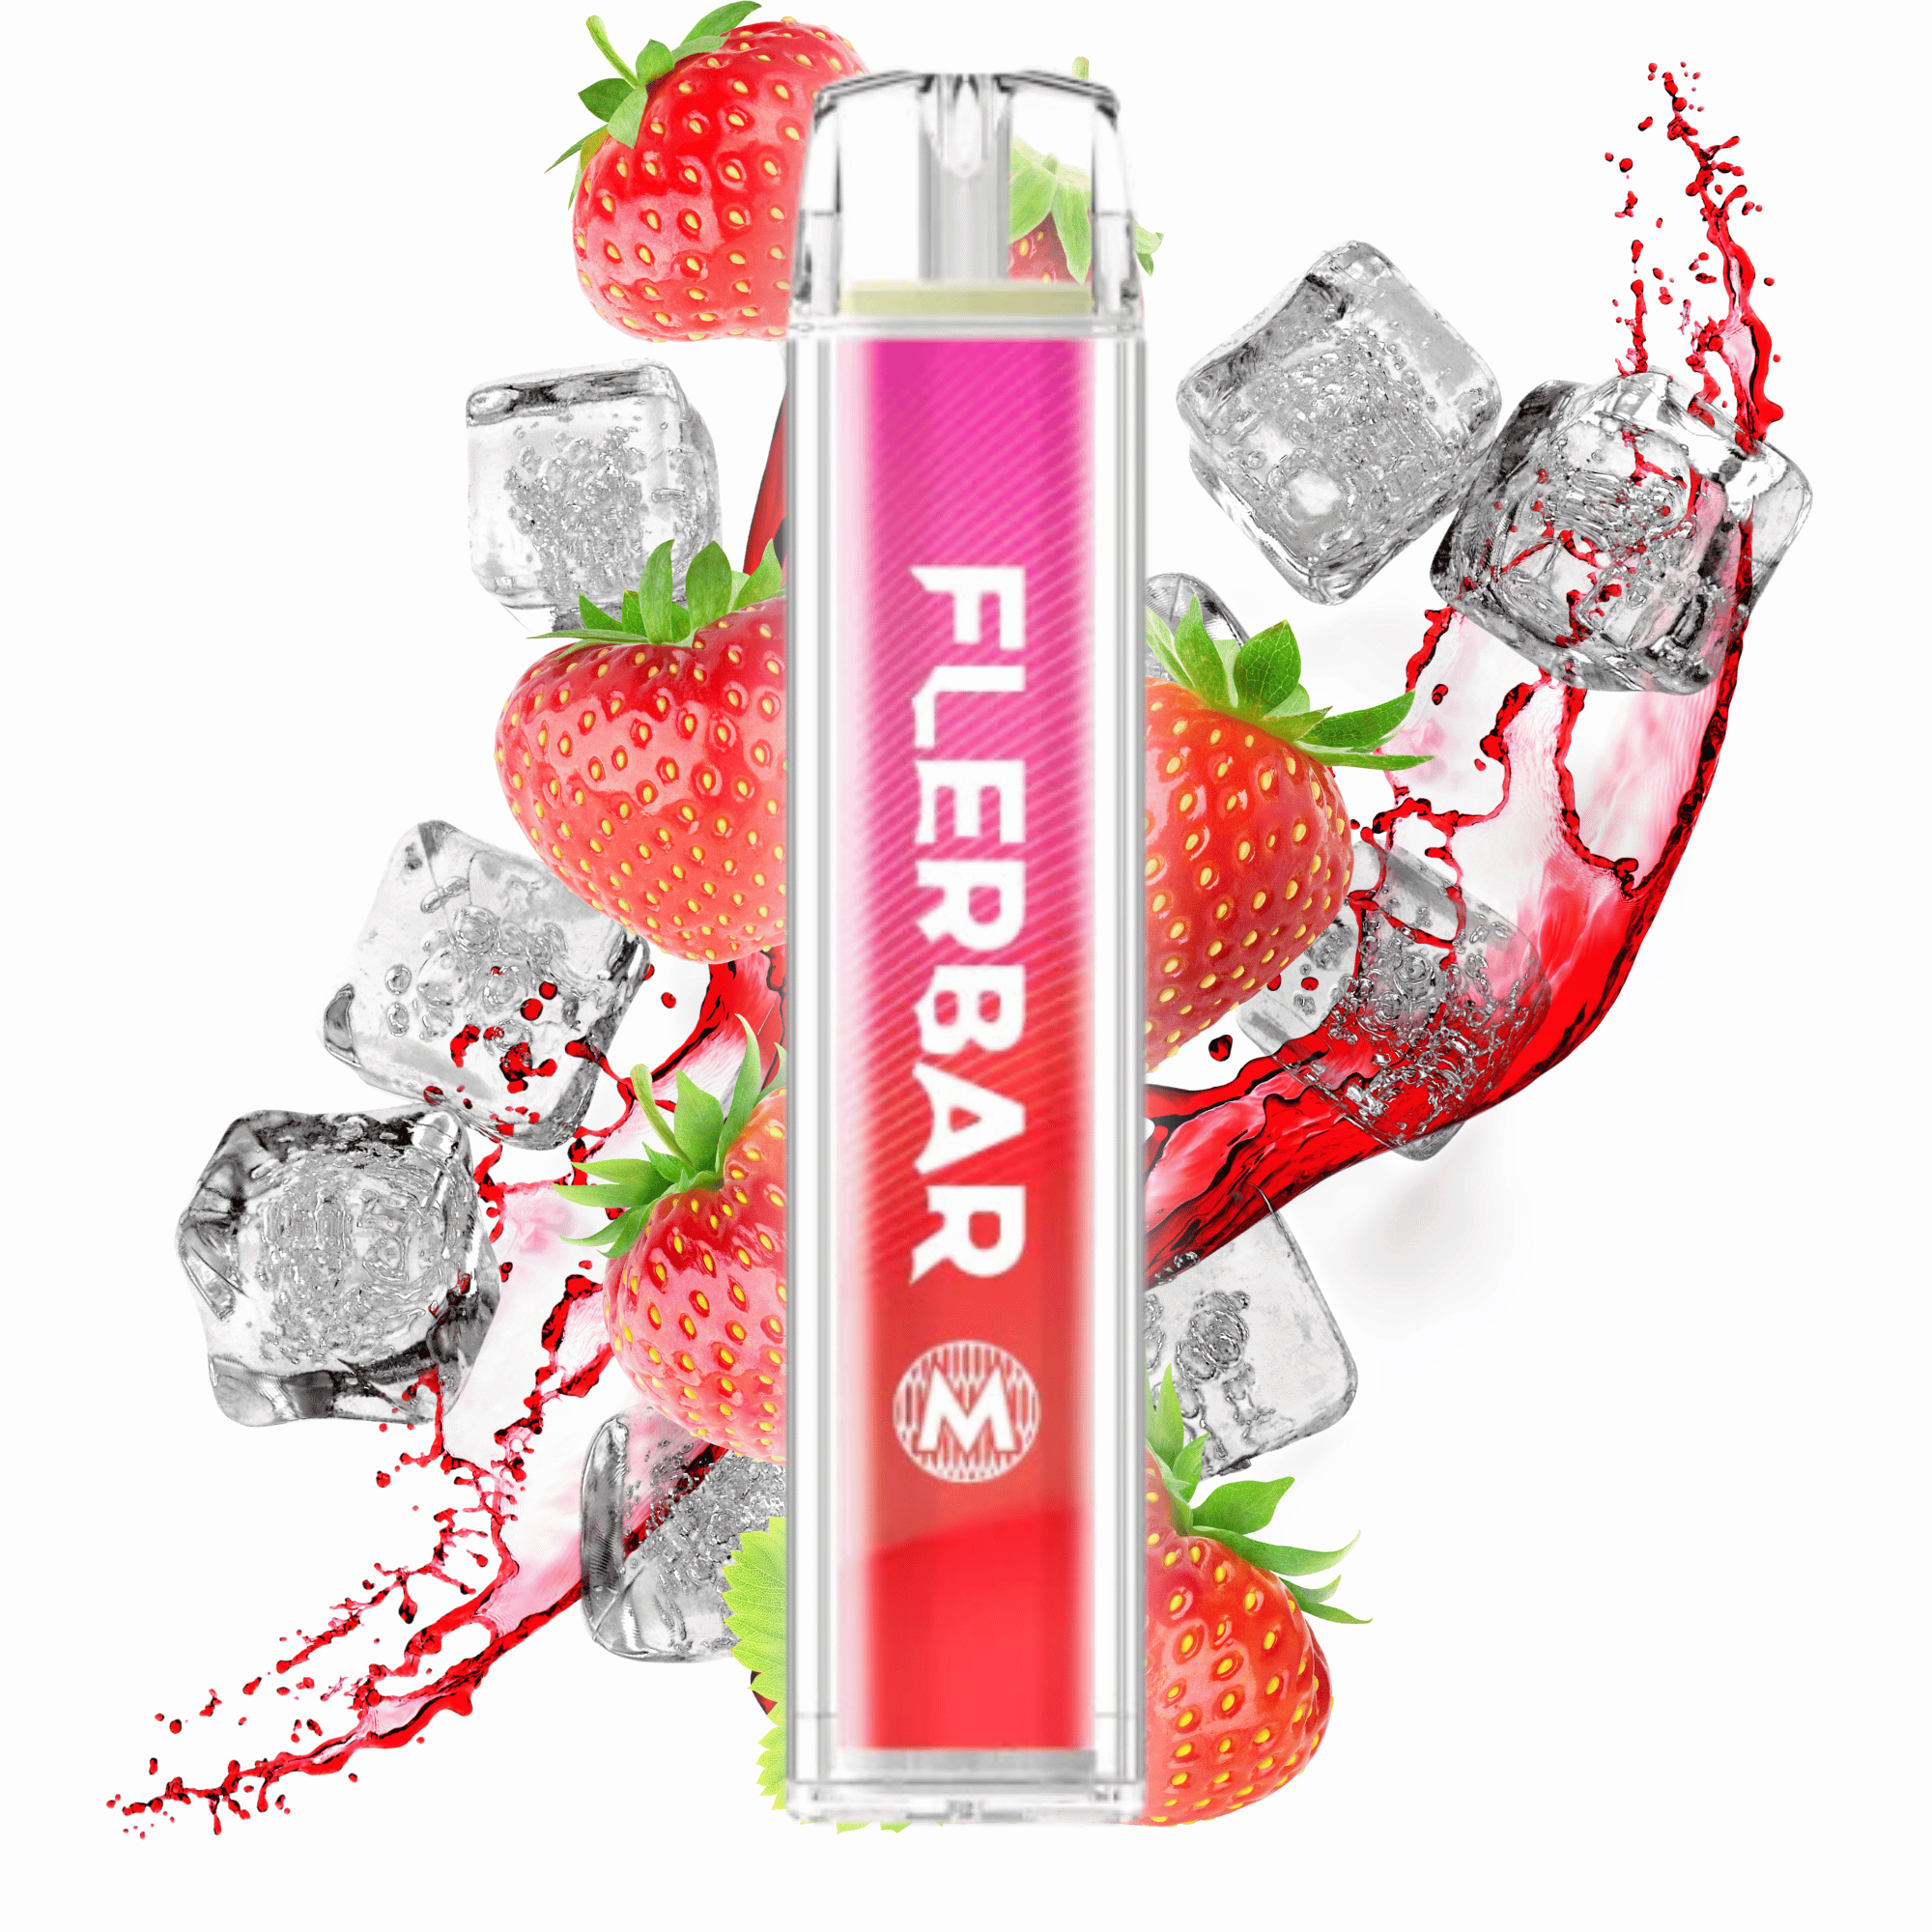 Flerbar Strawberry ice 20mg/ml